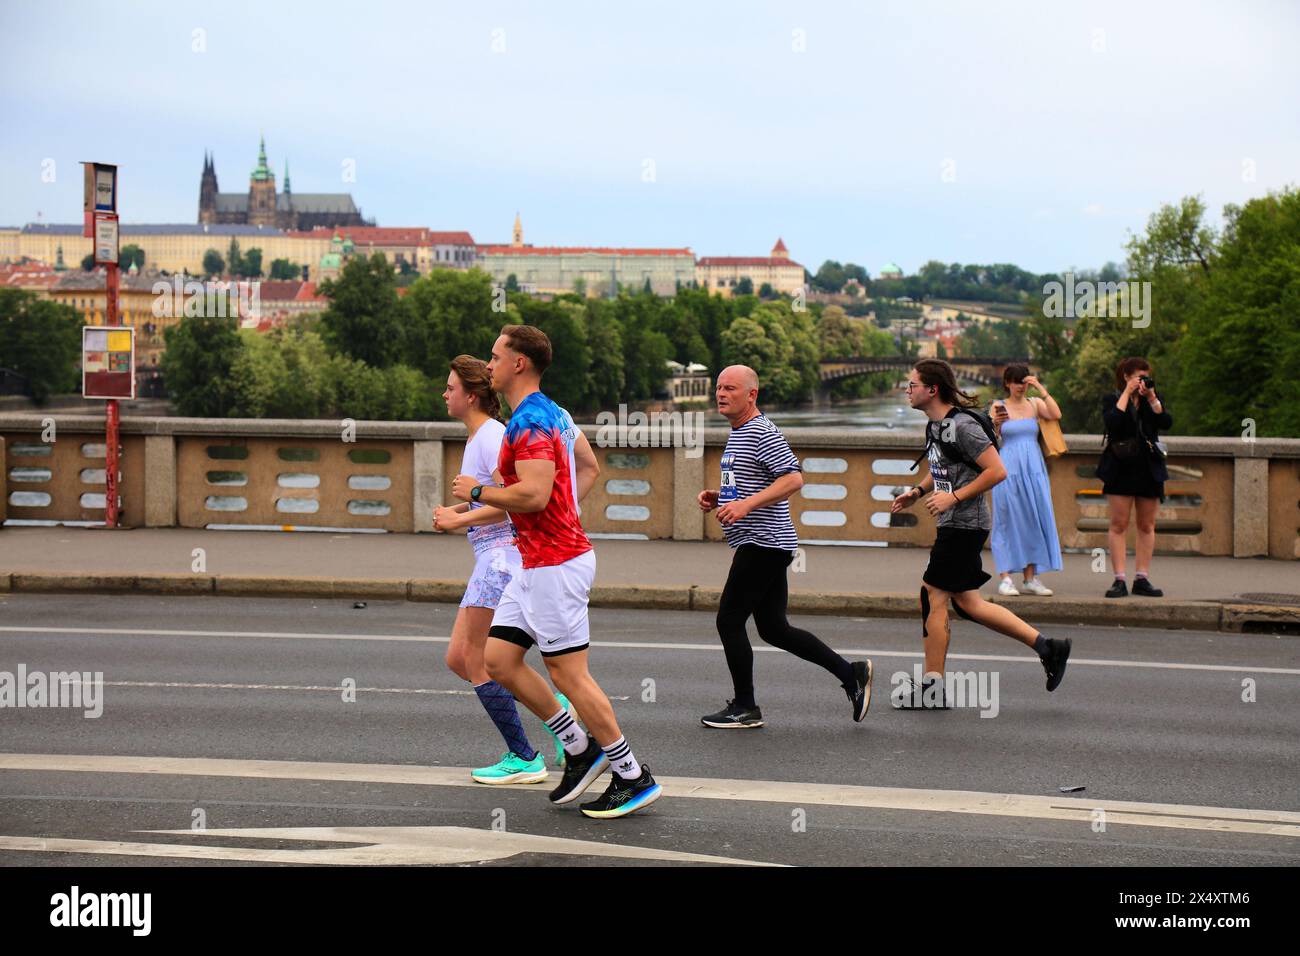 PRAGA, REPUBBLICA CECA - 5 MAGGIO 2024: I corridori prendono parte alla Maratona di Praga, una delle più grandi gare maratoniche d'Europa. Foto Stock